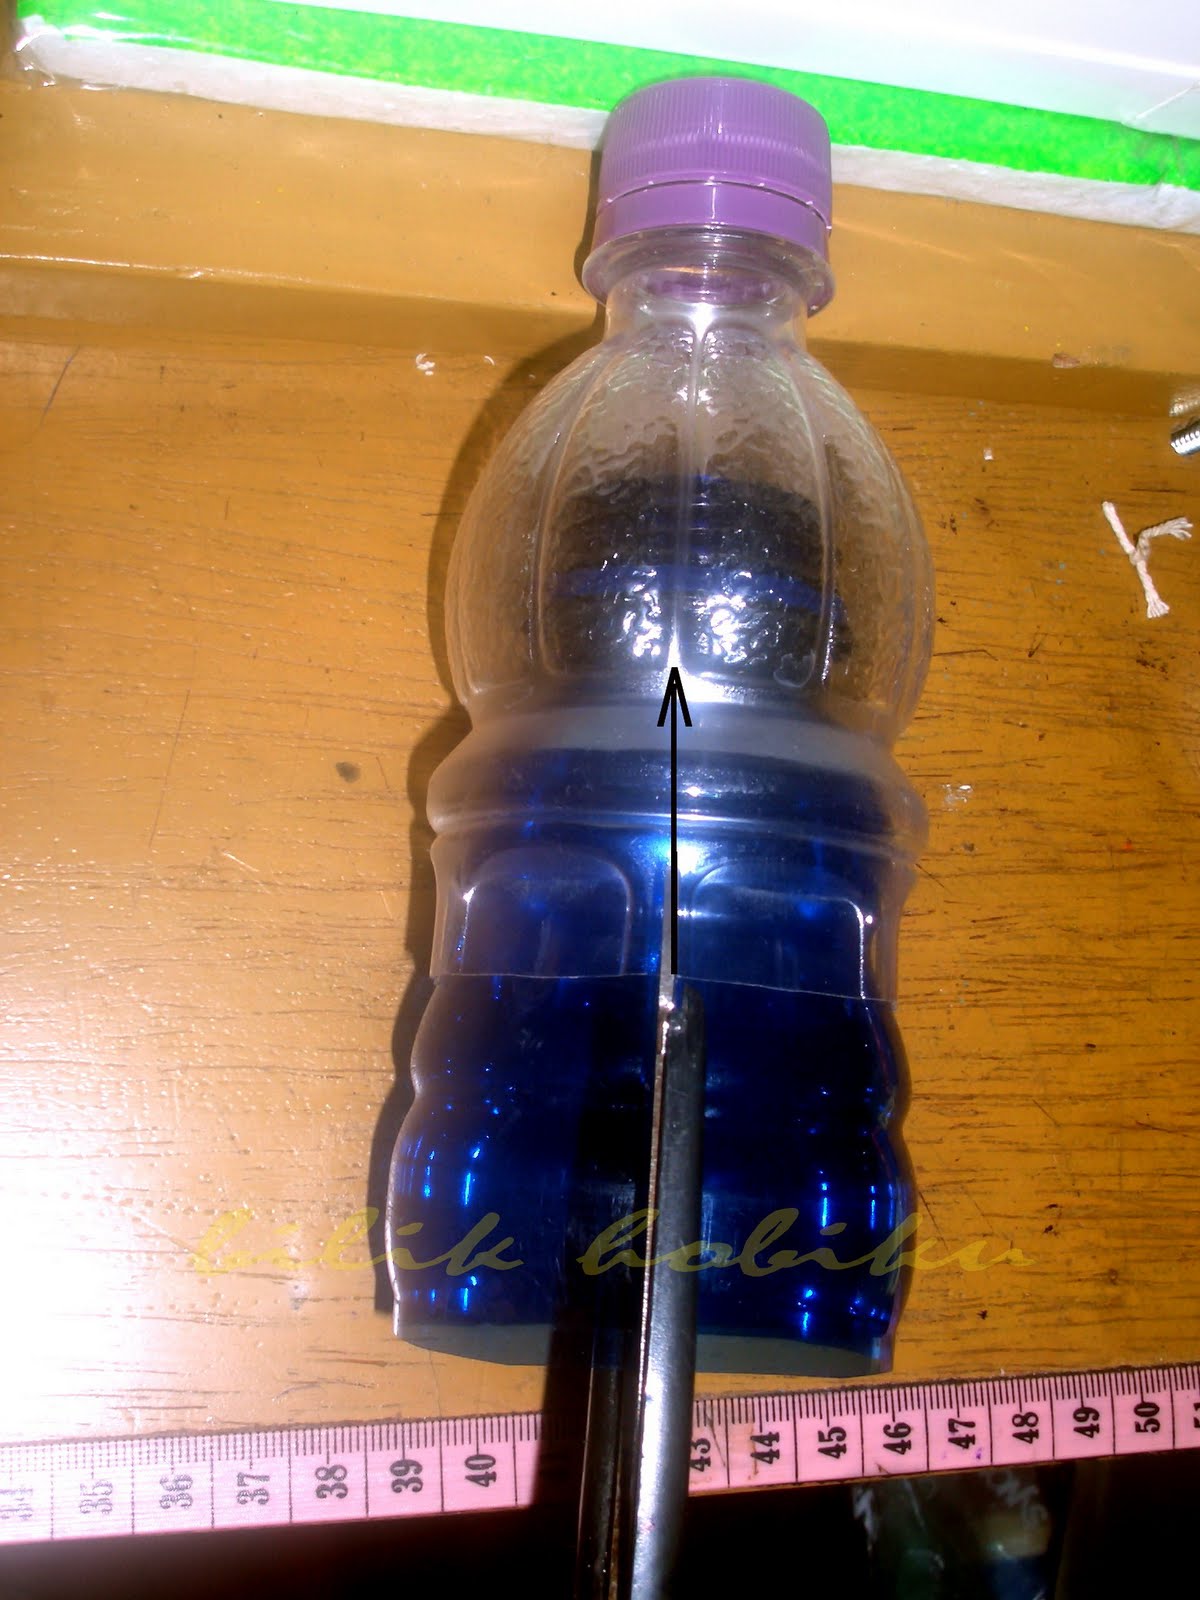 Recycle Mizone  Bottle 2 Lampion dari Botol Mizone  